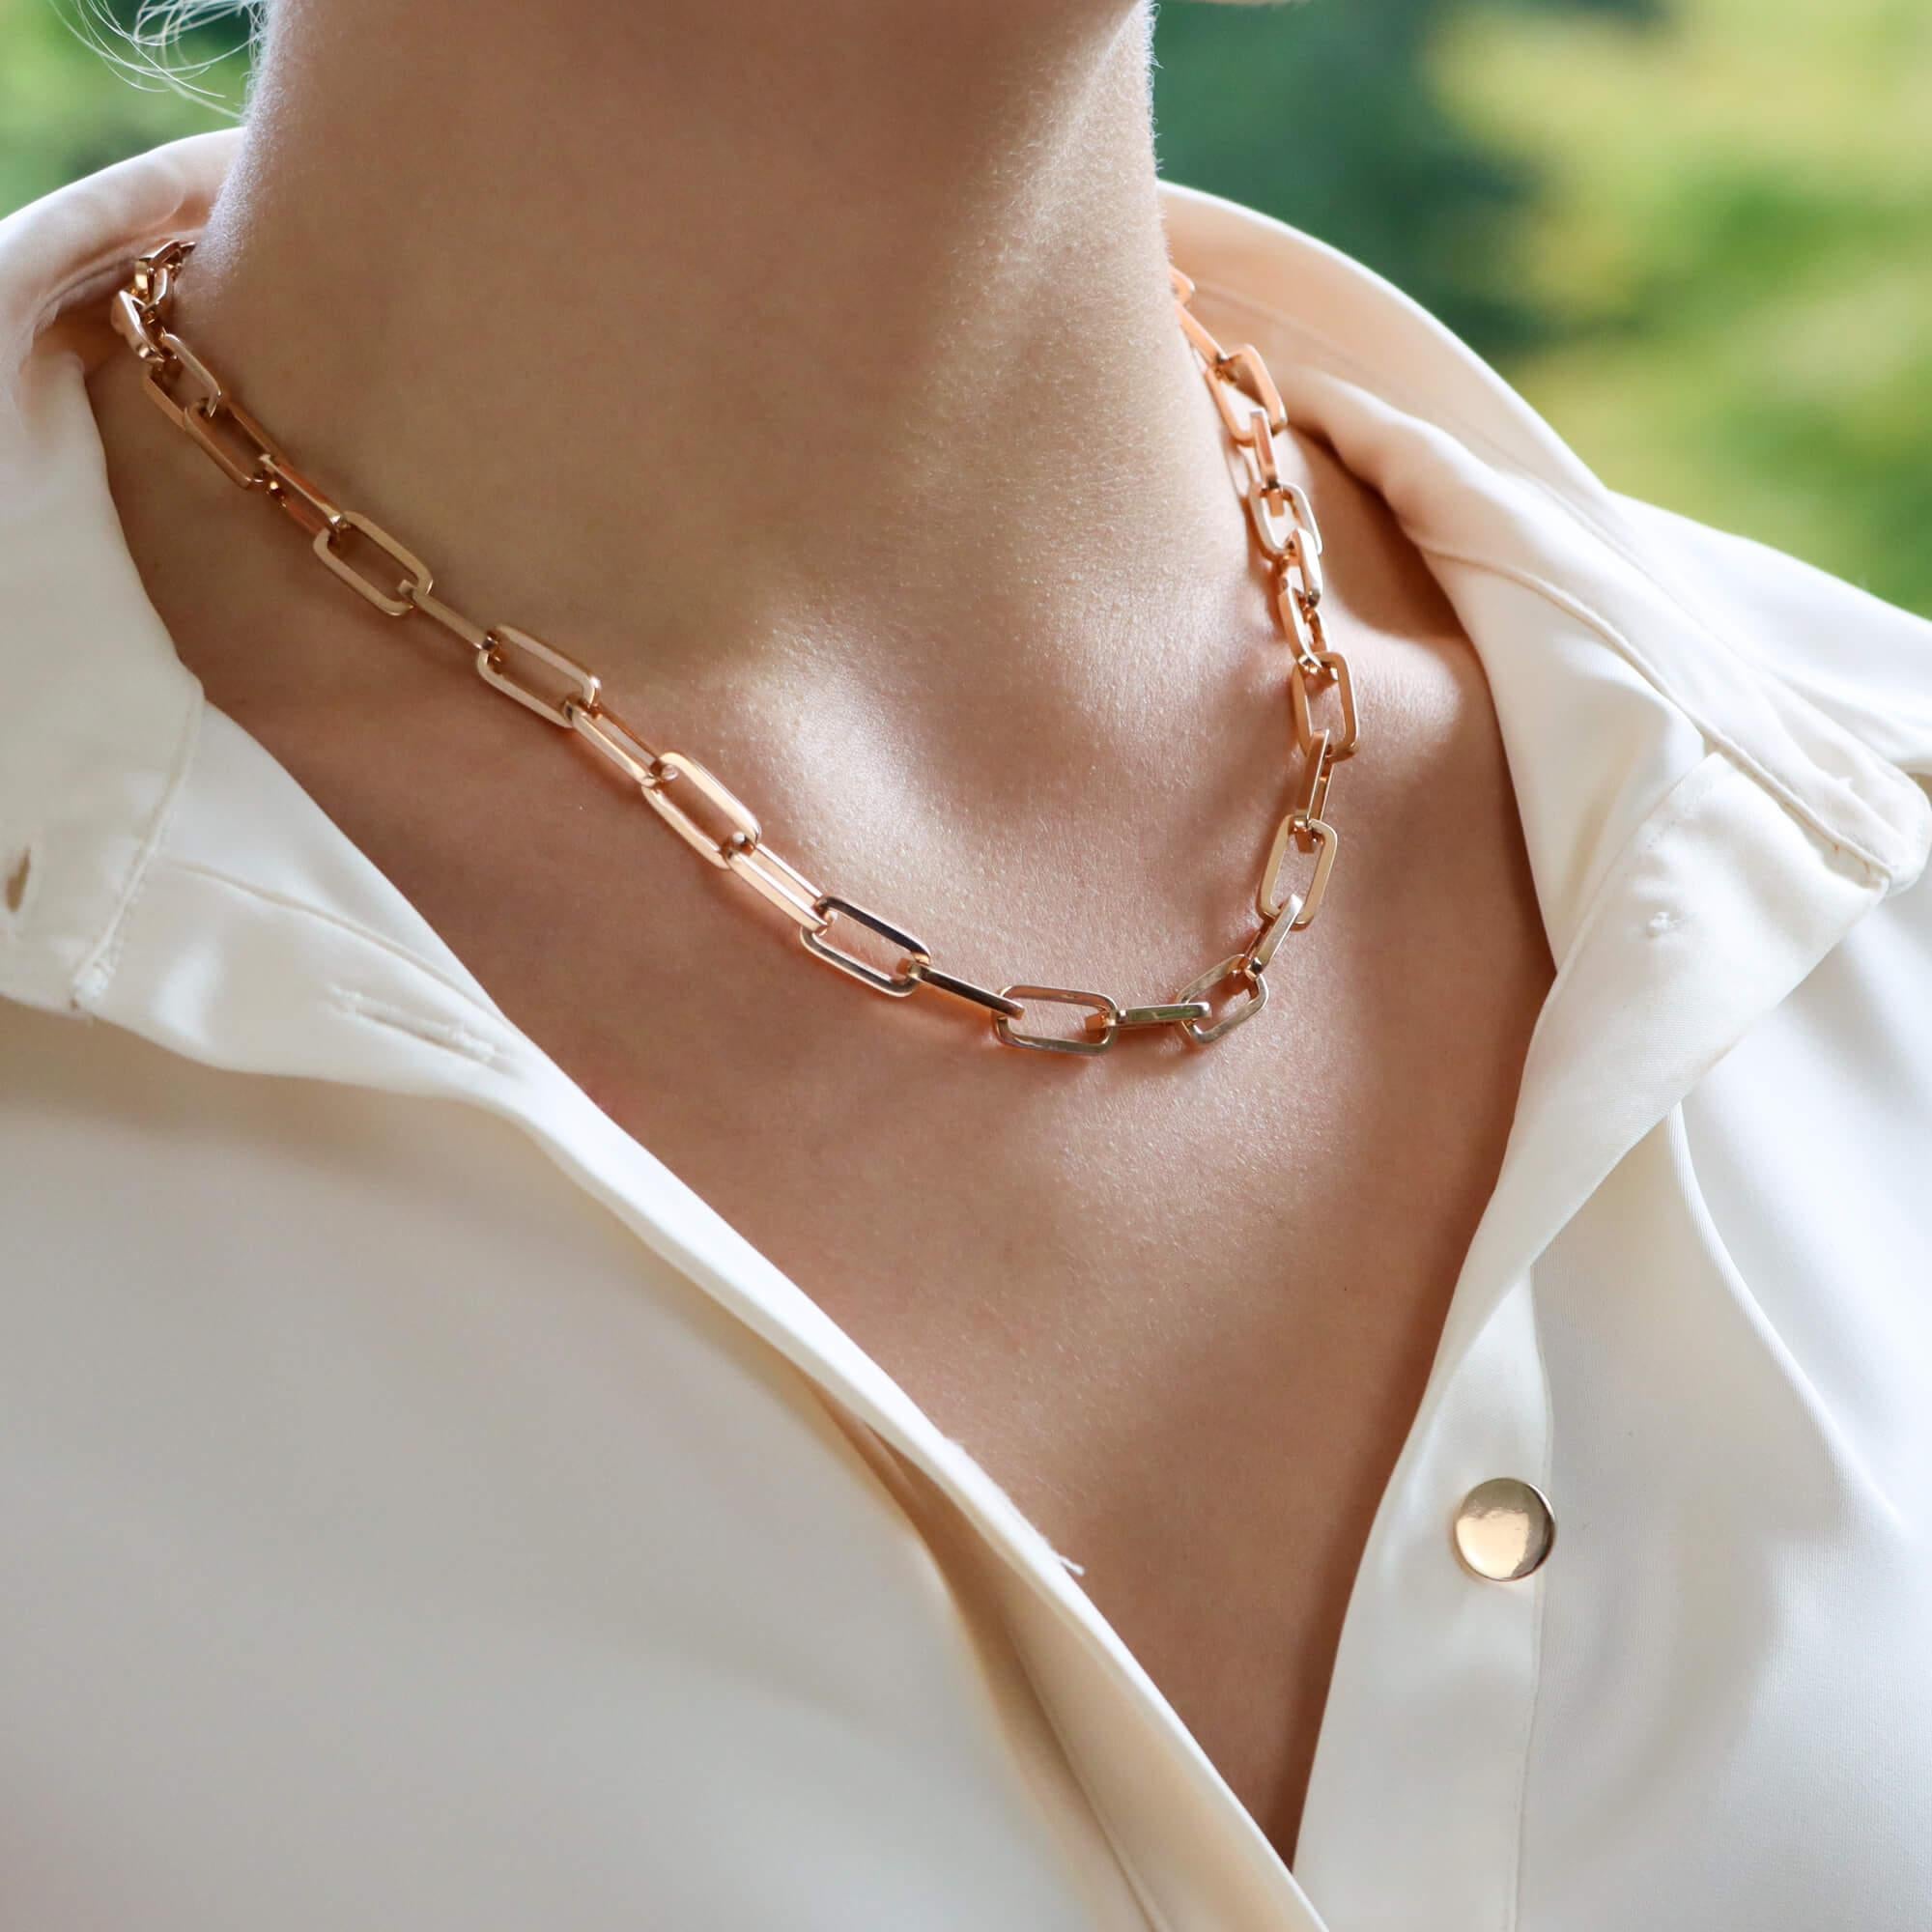 Ein wunderschönes, modernes Gliedercollier aus 18 Karat Roségold.

Die Halskette besteht aus genau 38 länglichen, ovalen Goldgliedern, die so miteinander verbunden sind, dass sie bequem am Hals der Trägerin sitzen können. Einmal aufgesetzt, sehen